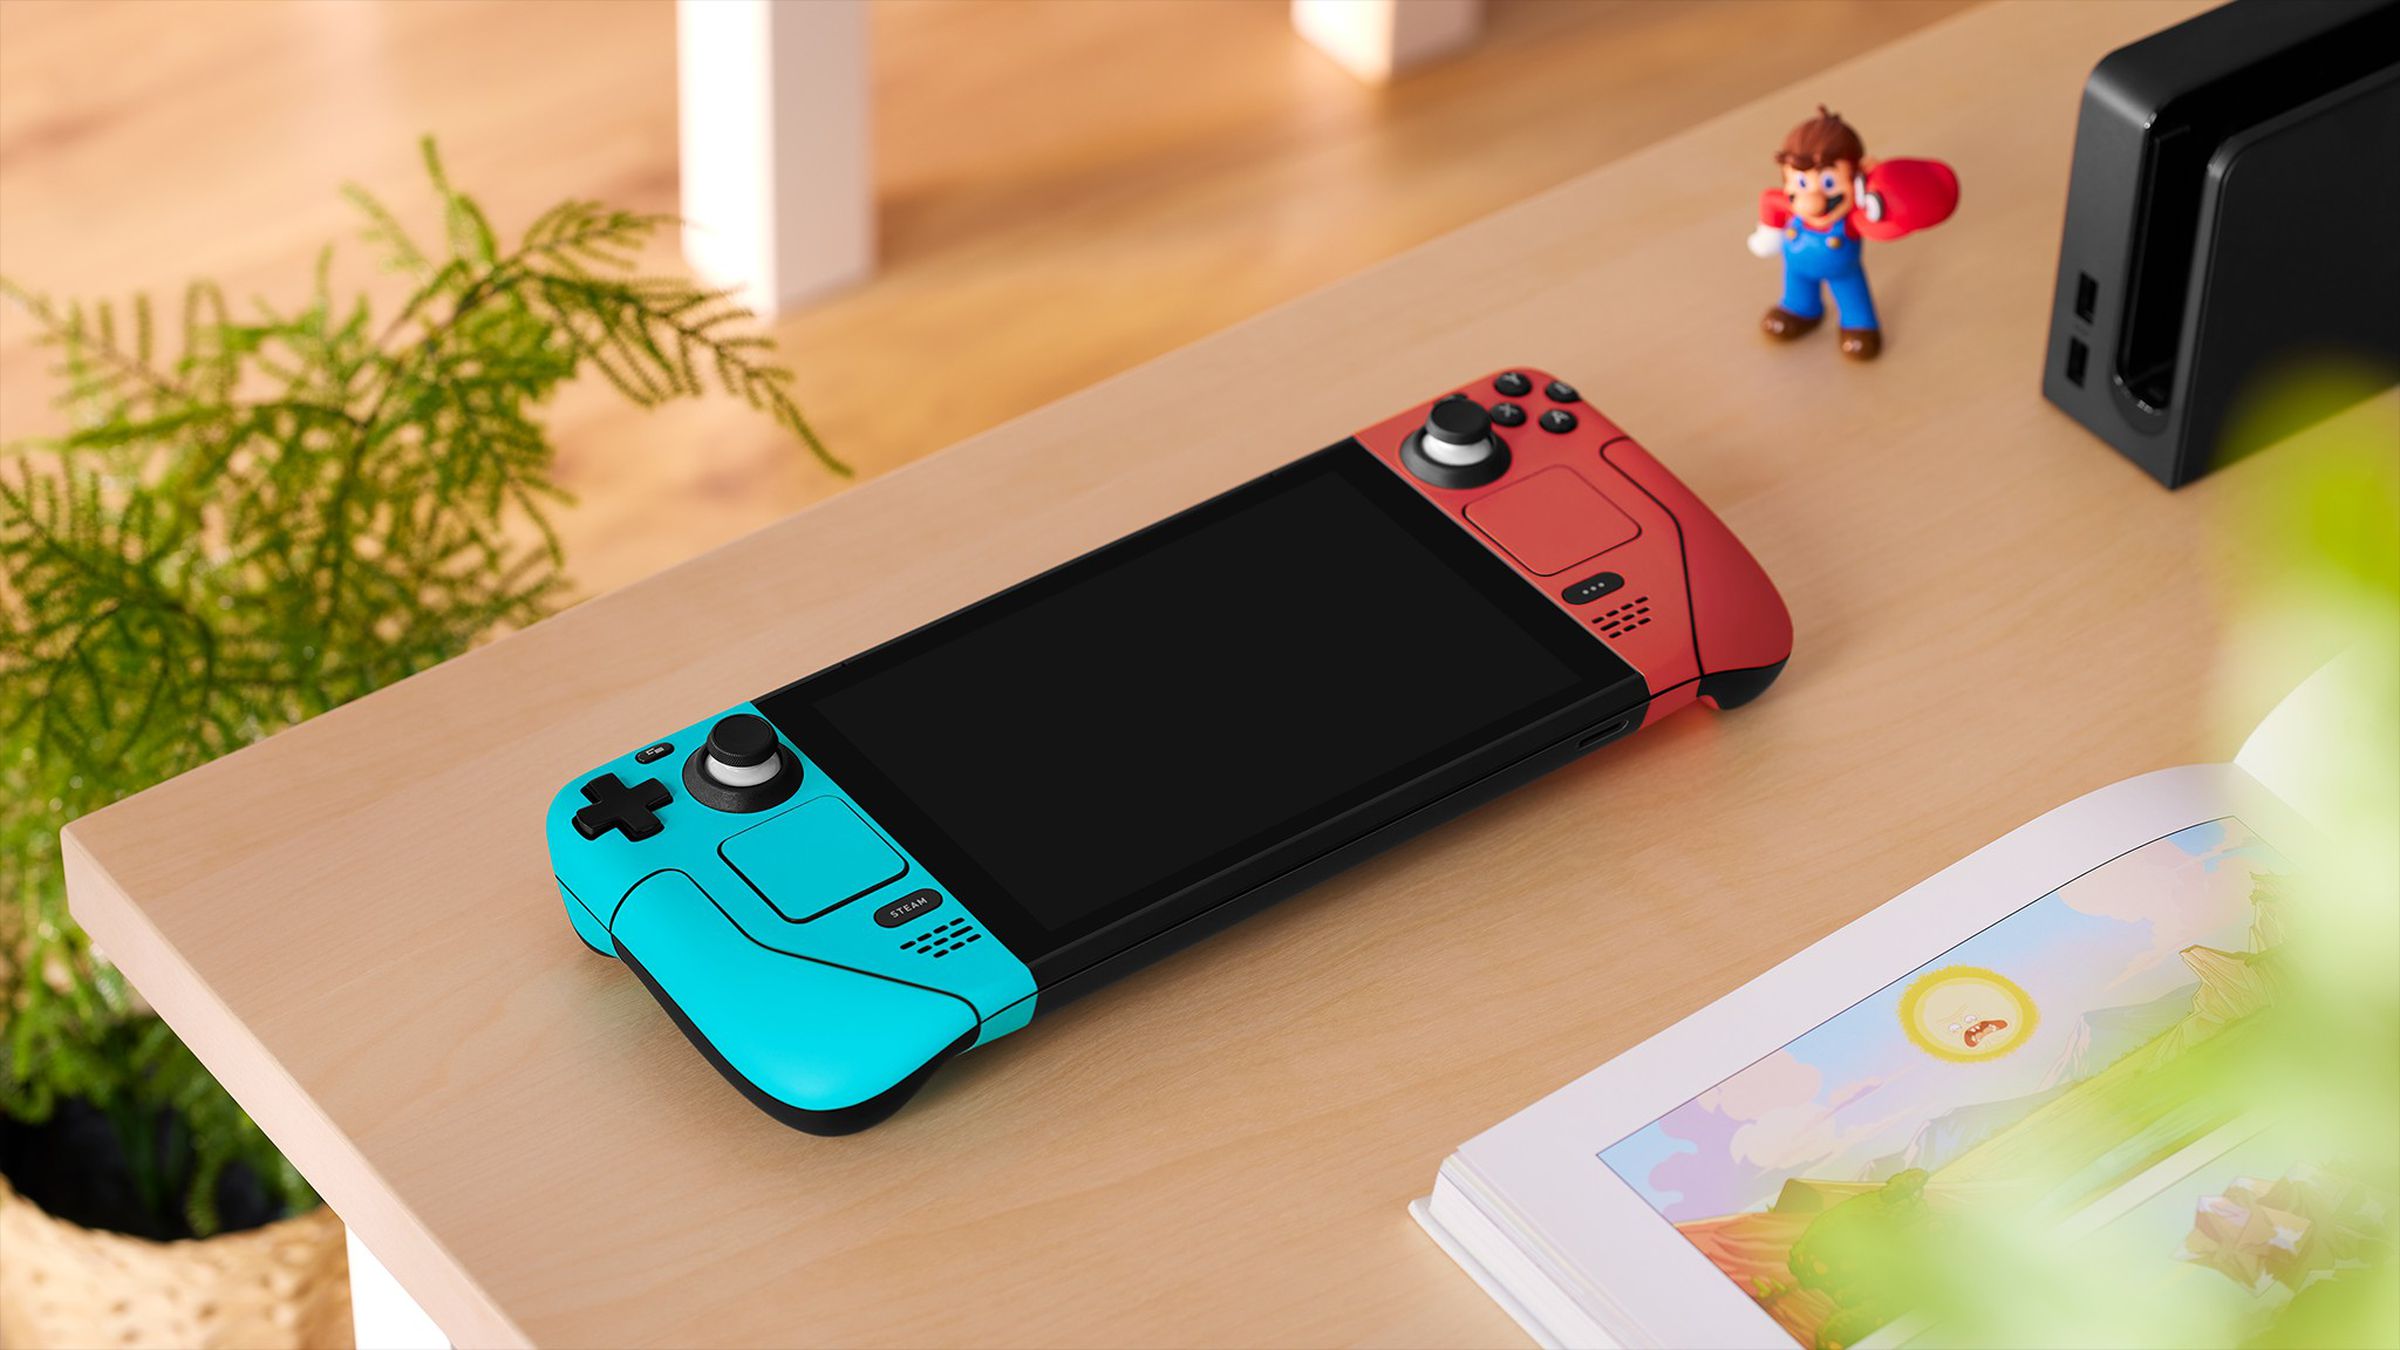 Les boutons rouges et bleus rappellent Portal … ou une configuration particulière de Nintendo Switch.